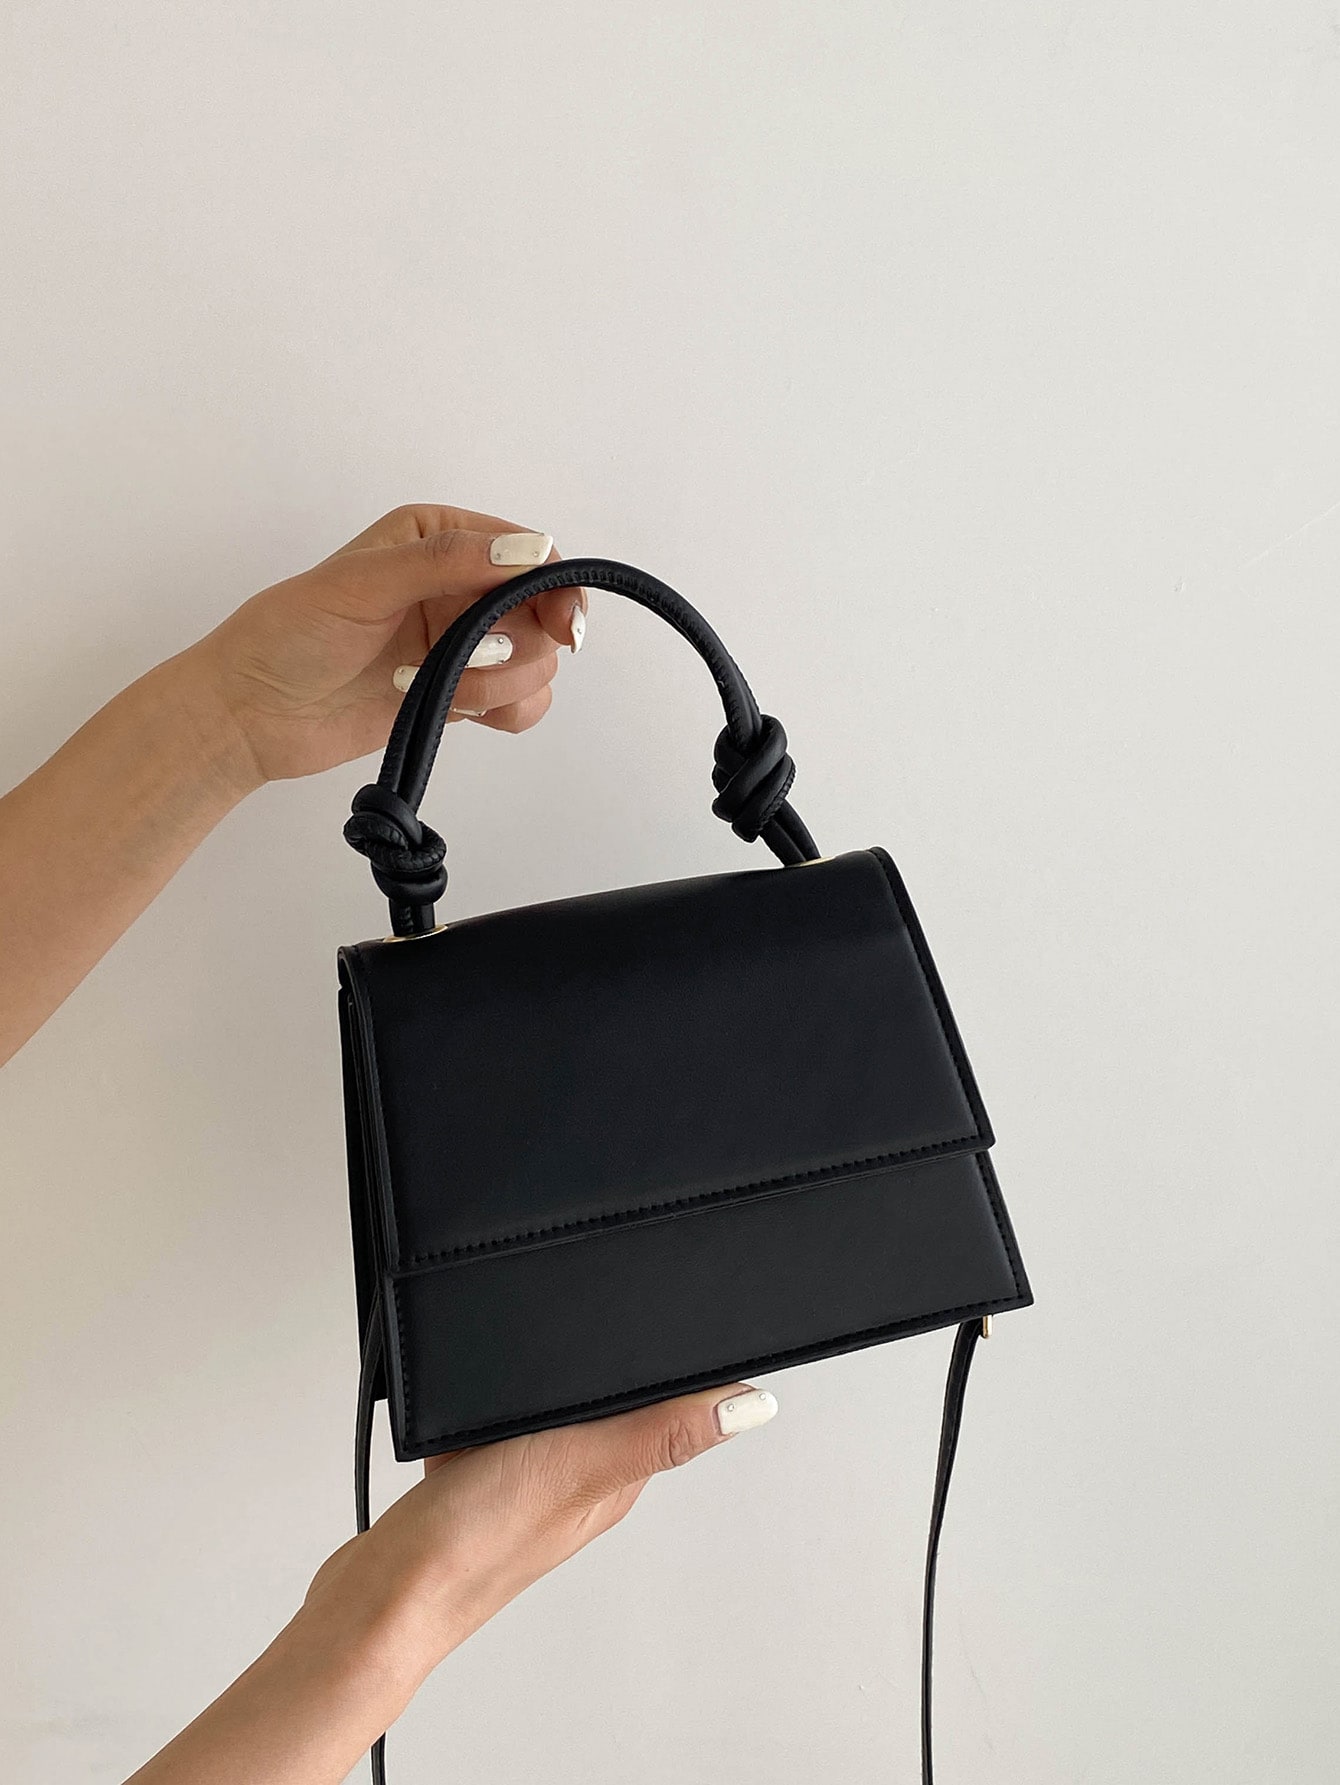 Мини-квадратная сумка Однотонная черная верхняя ручка Элегантный стиль Минималистская текстурированная сумка с верхней ручкой, черный